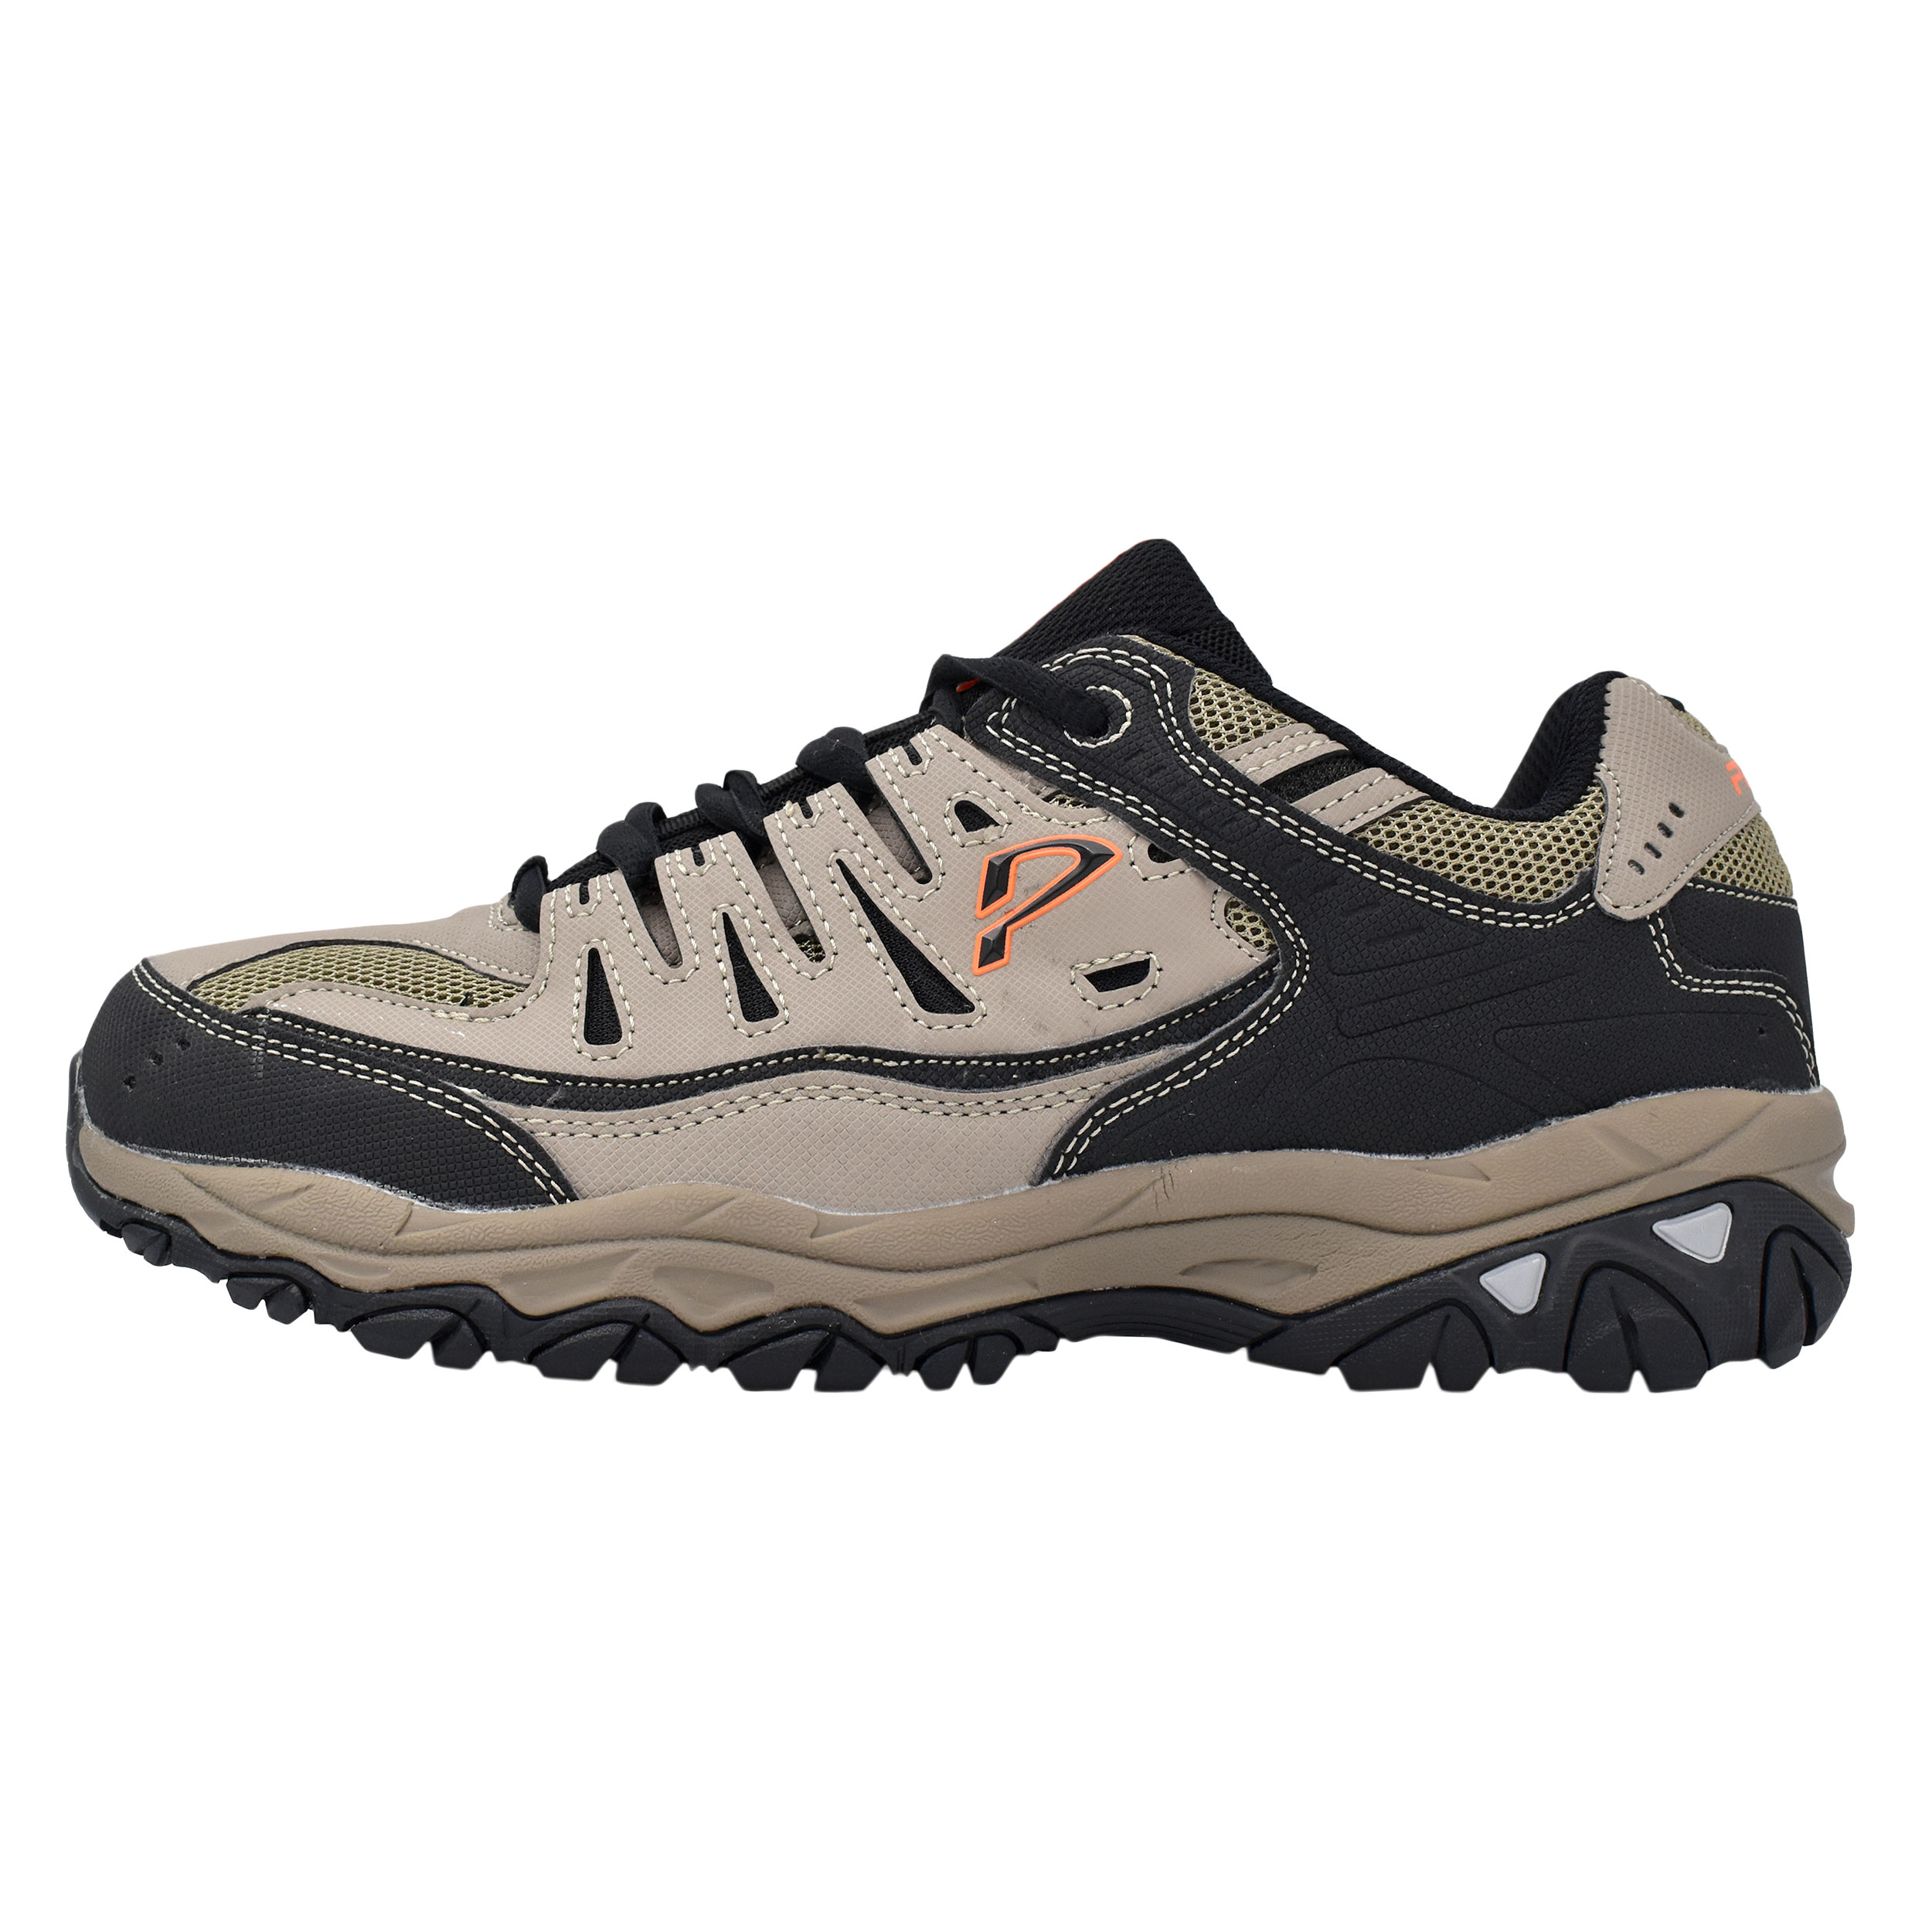 نکته خرید - قیمت روز کفش کوهنوردی مردانه پاما مدل Darvin کد 2-G1326 خرید